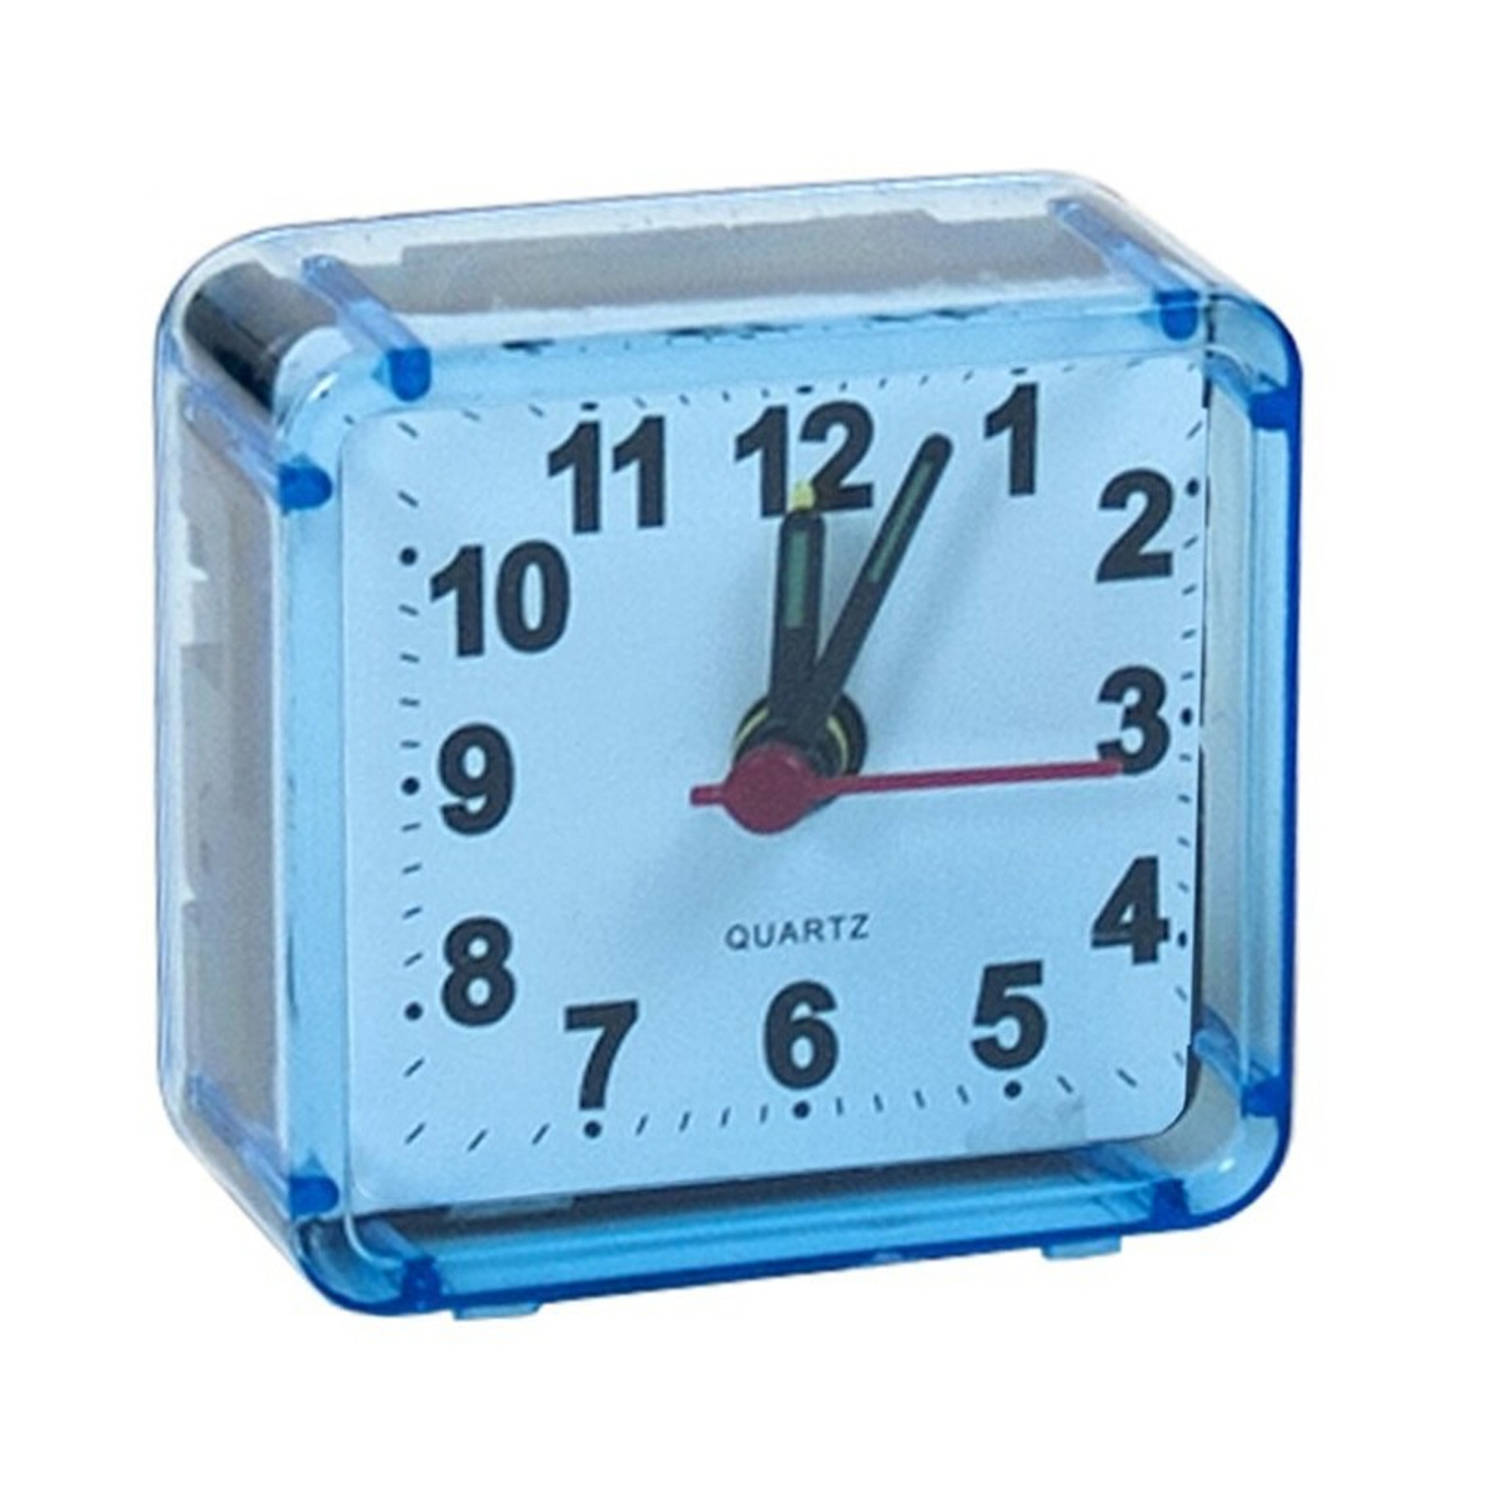 Gerimport Reiswekker-alarmklok analoog licht blauw kunststof 6 x 3 cm klein model Wekkers